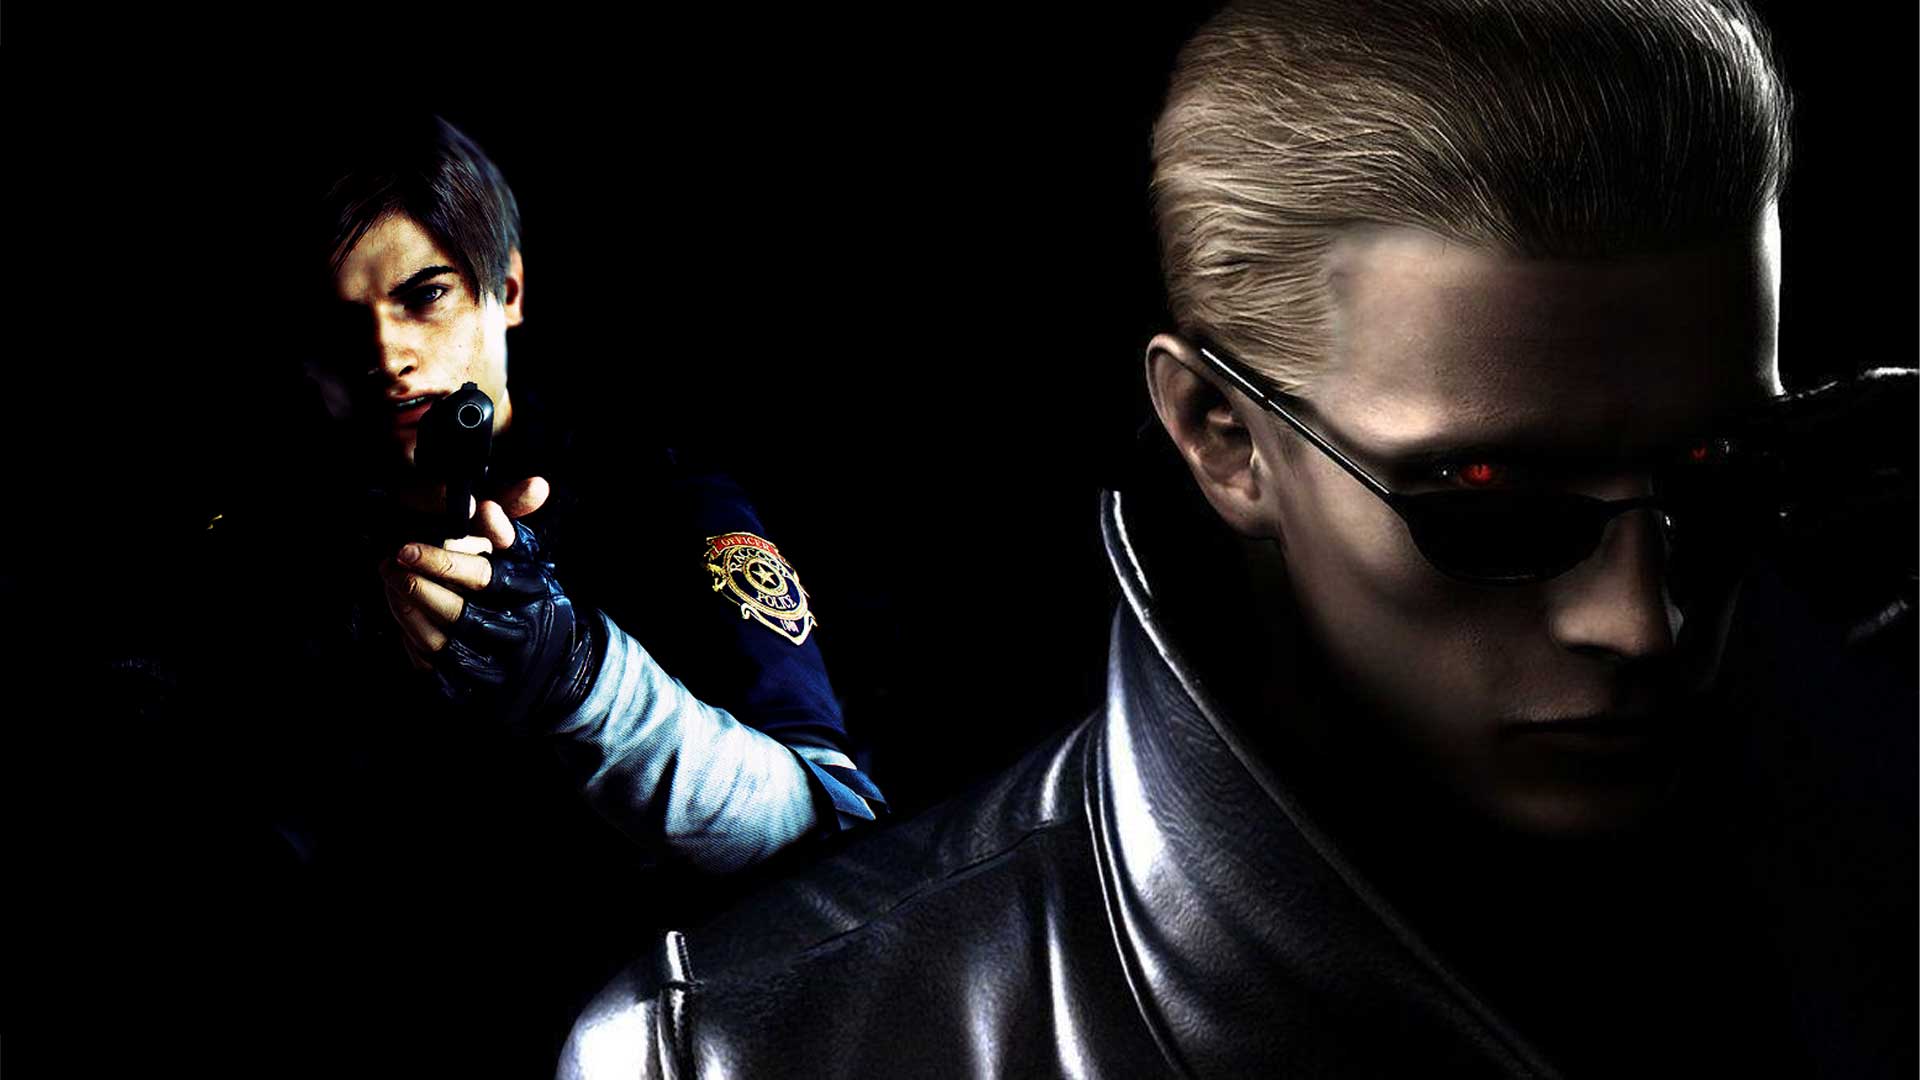 لیون کندی و آلبرت وسکر در سری Resident Evil: ملاقاتی که هیچگاه رخ نداد